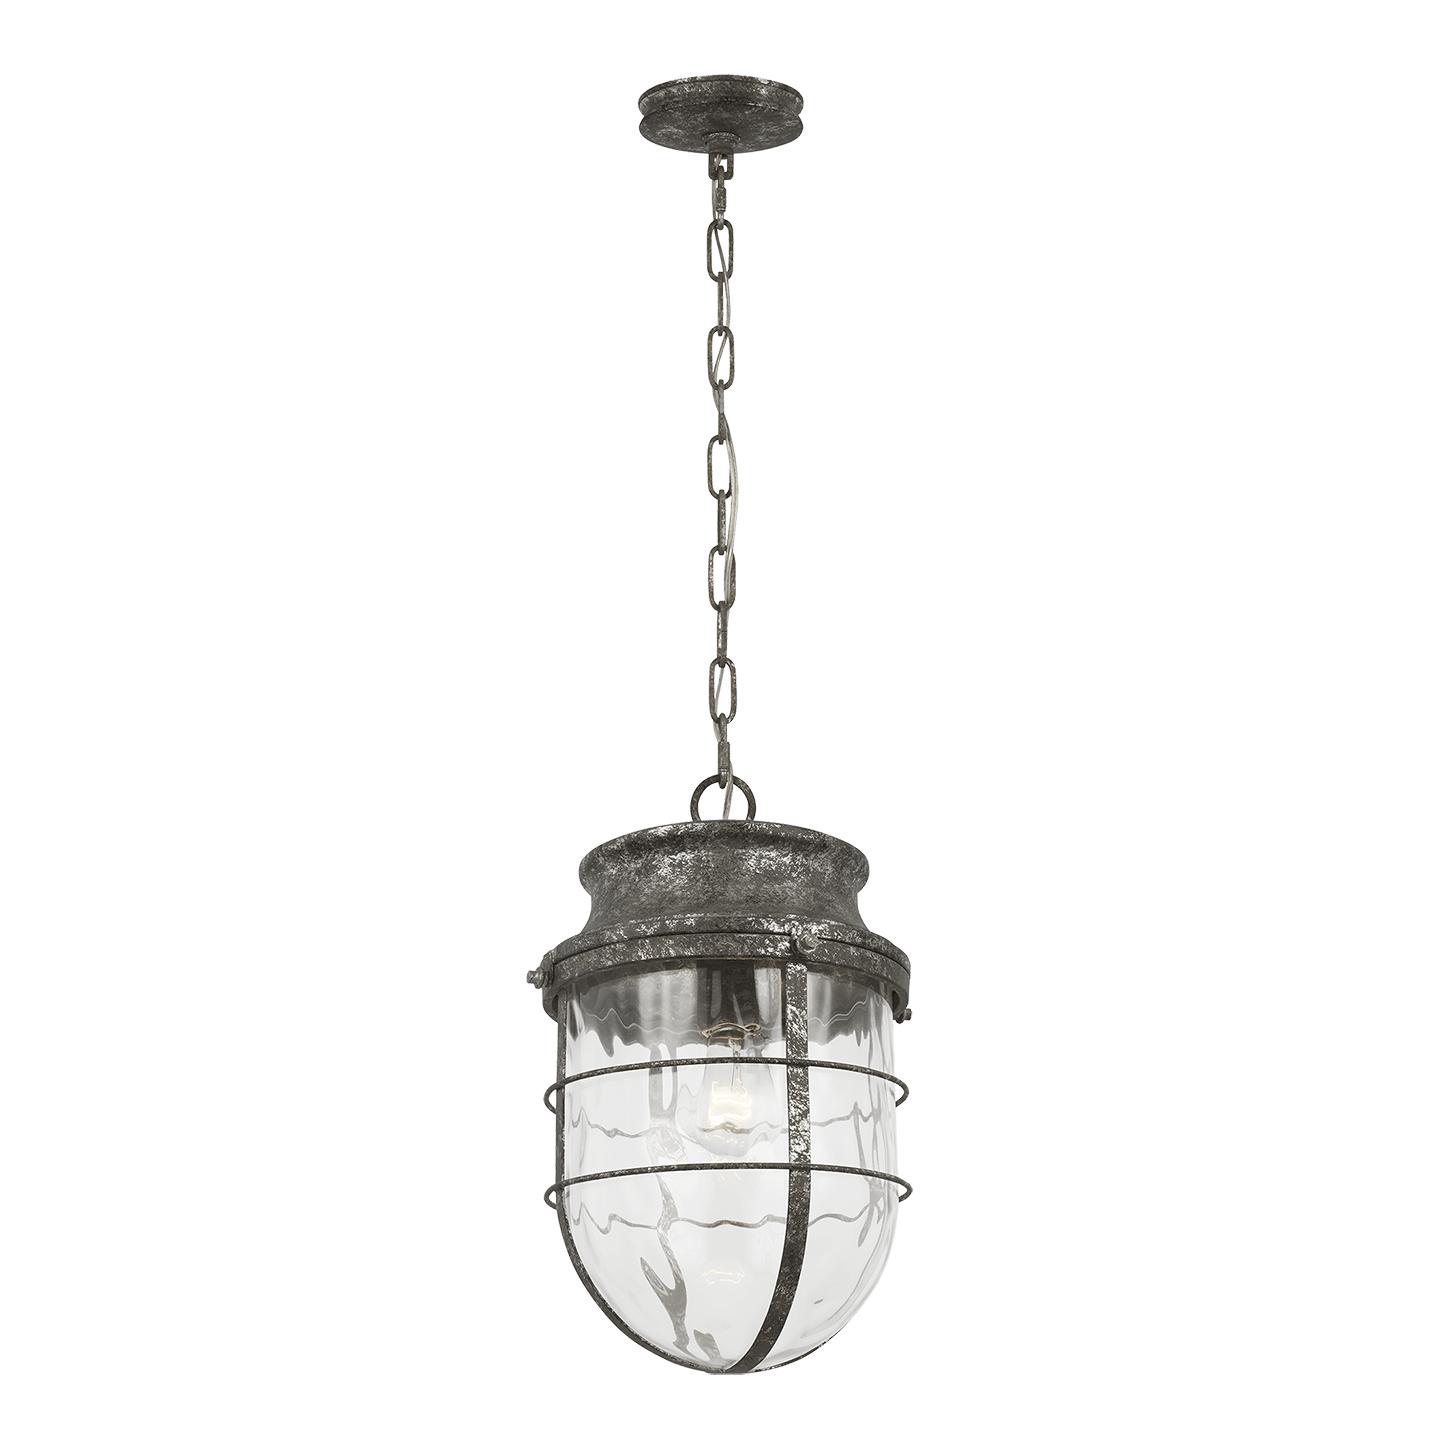 Купить Подвесной светильник Parson Medium Pendant в интернет-магазине roooms.ru